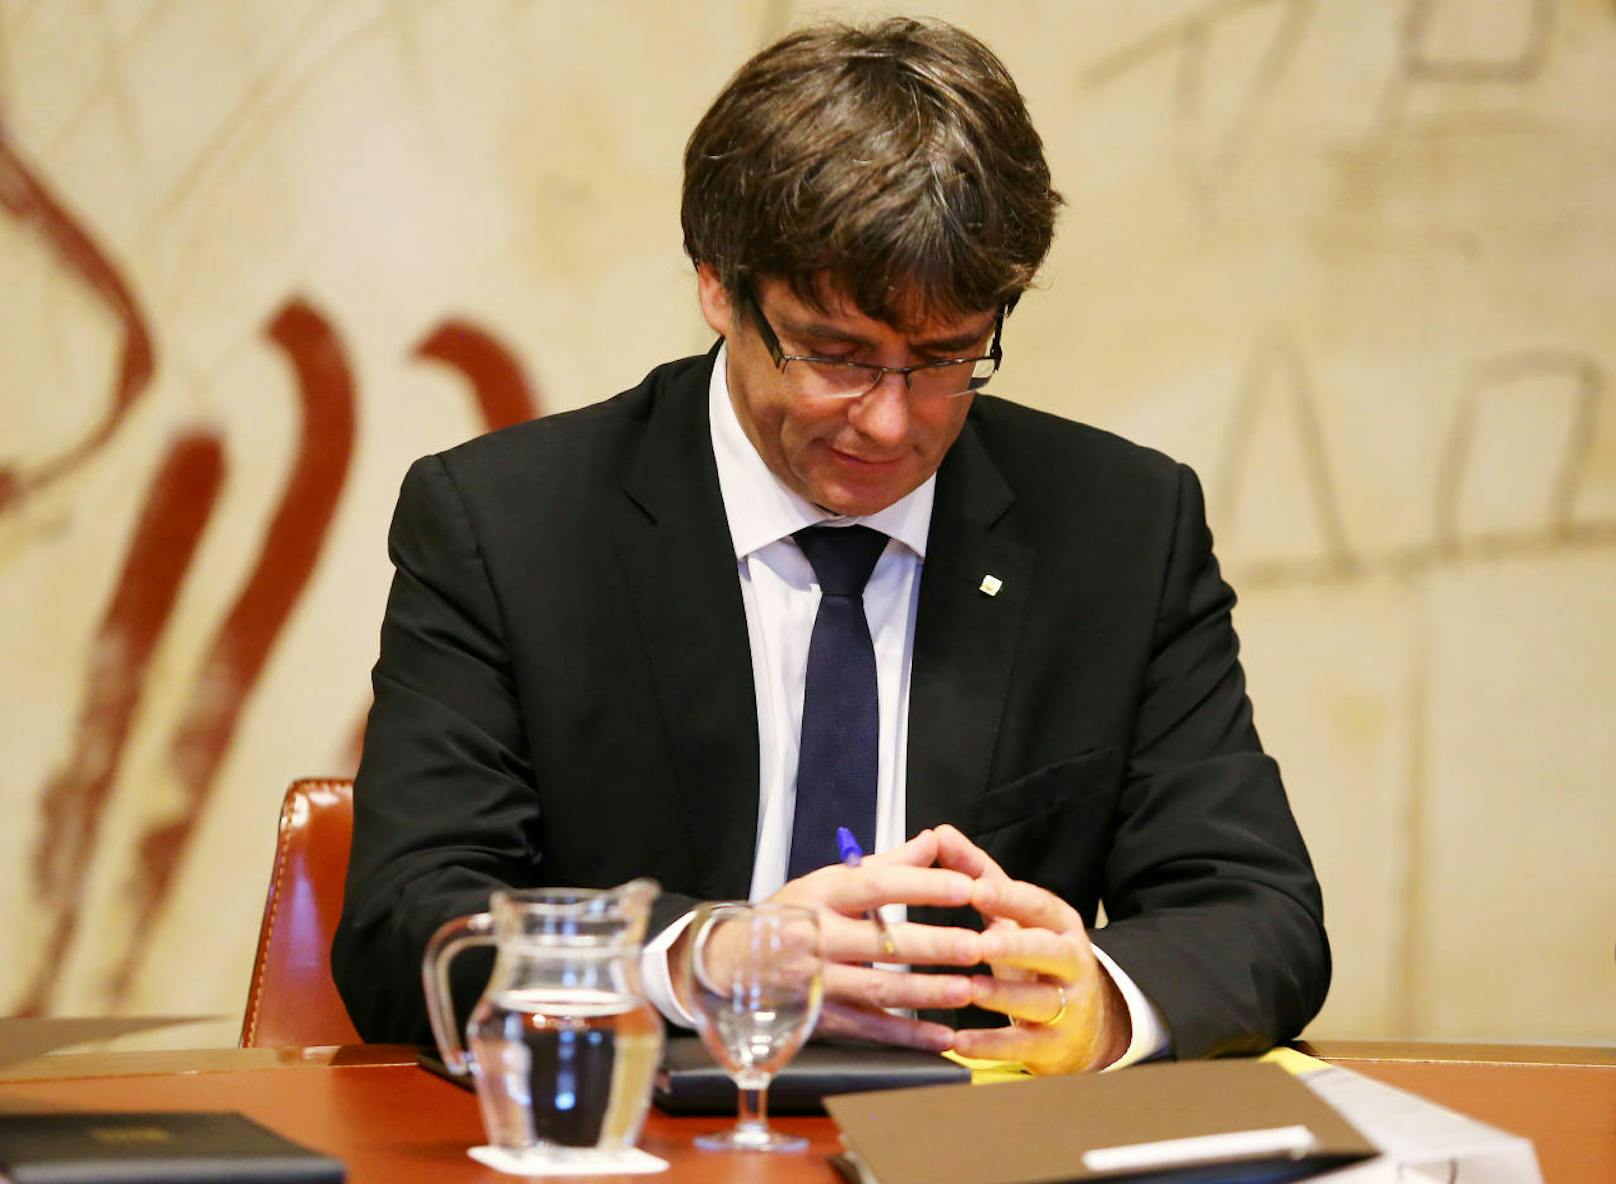 Um 18 Uhr ist eine Erklärung im Parlament angekündigt - von Puigdemont